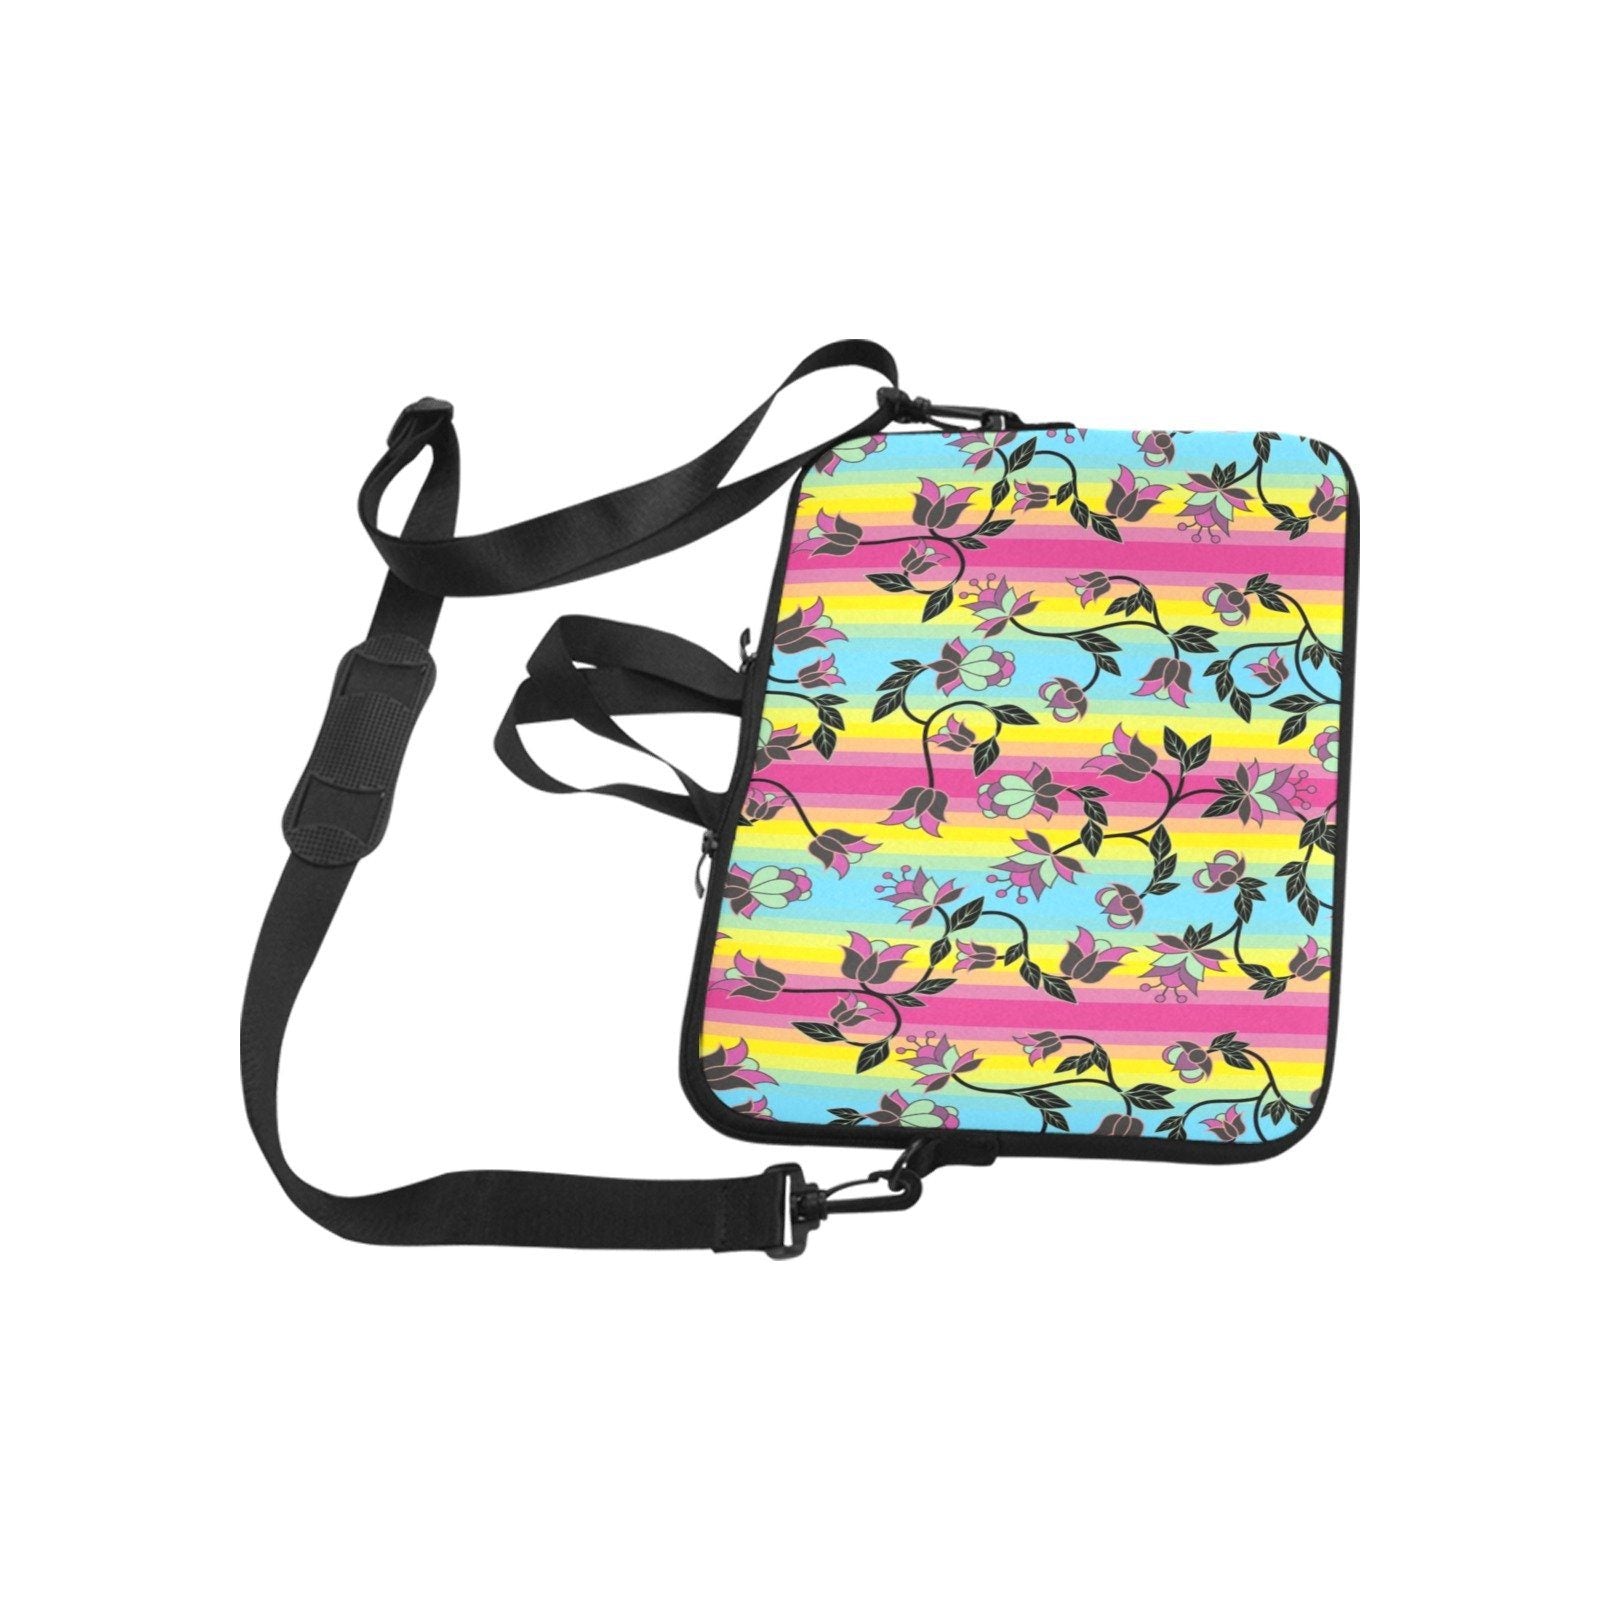 Powwow Carnival Laptop Handbags 13" Laptop Handbags 13" e-joyer 